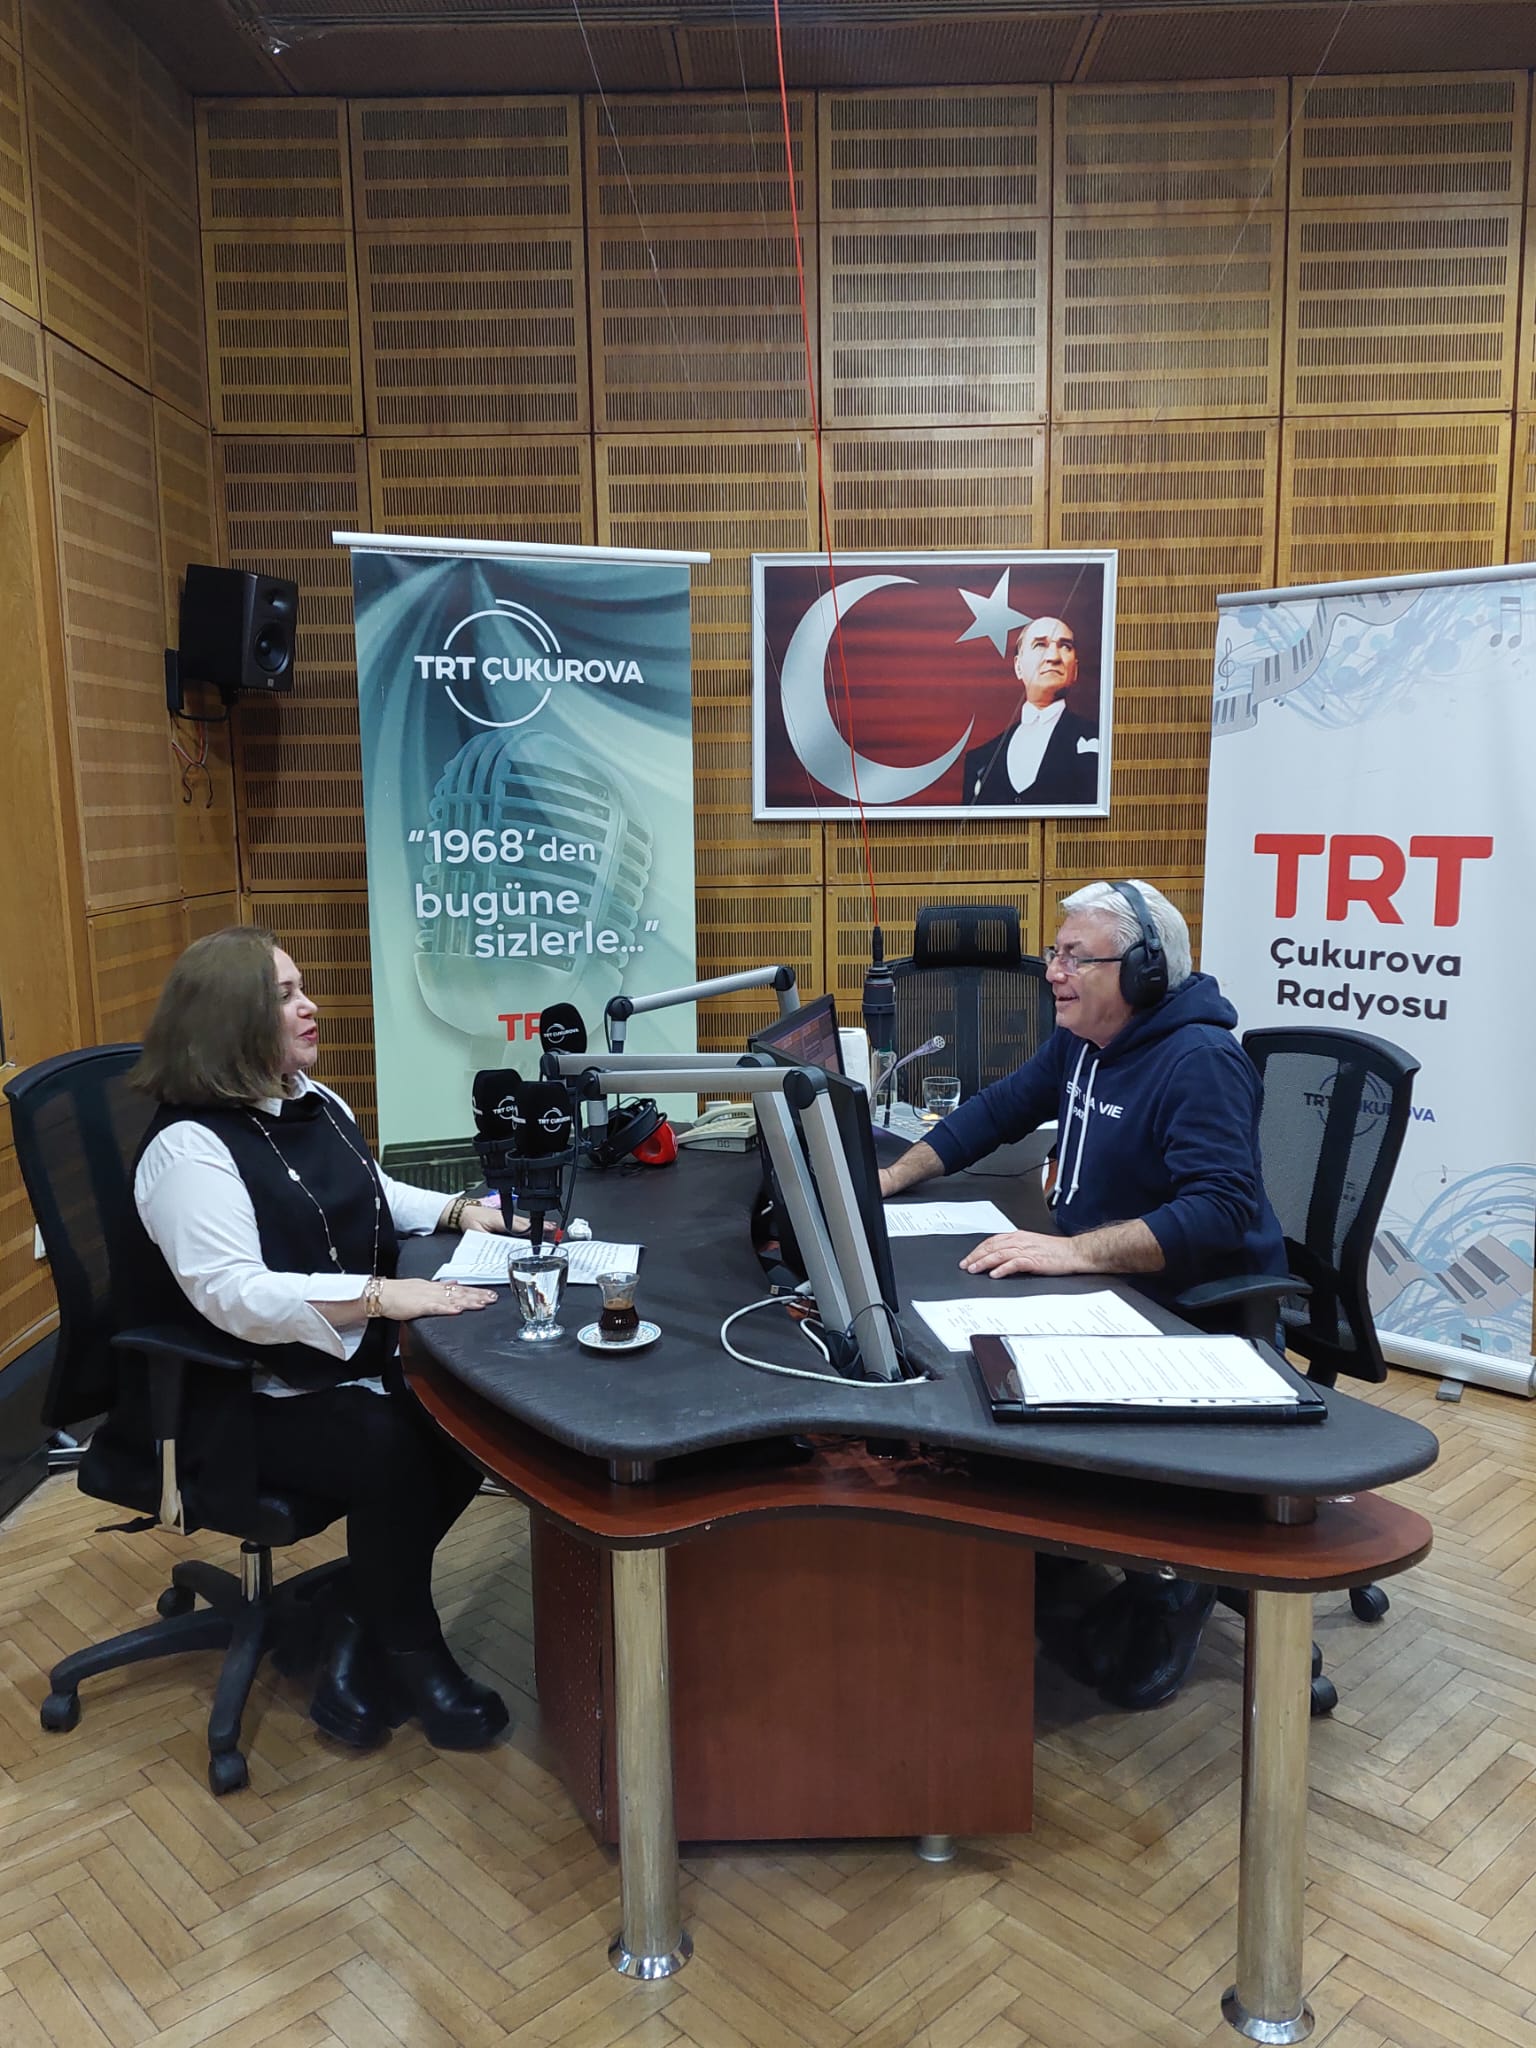 TRT Çukurova Radyosunun konuğu olduk ve "Aile Danışmanlığı, Bireysel Danışmanlık, Boşanma Öncesi, Boşanma Sonrası ve Boşanma Süreci Danışmanlığı"nı anlattık